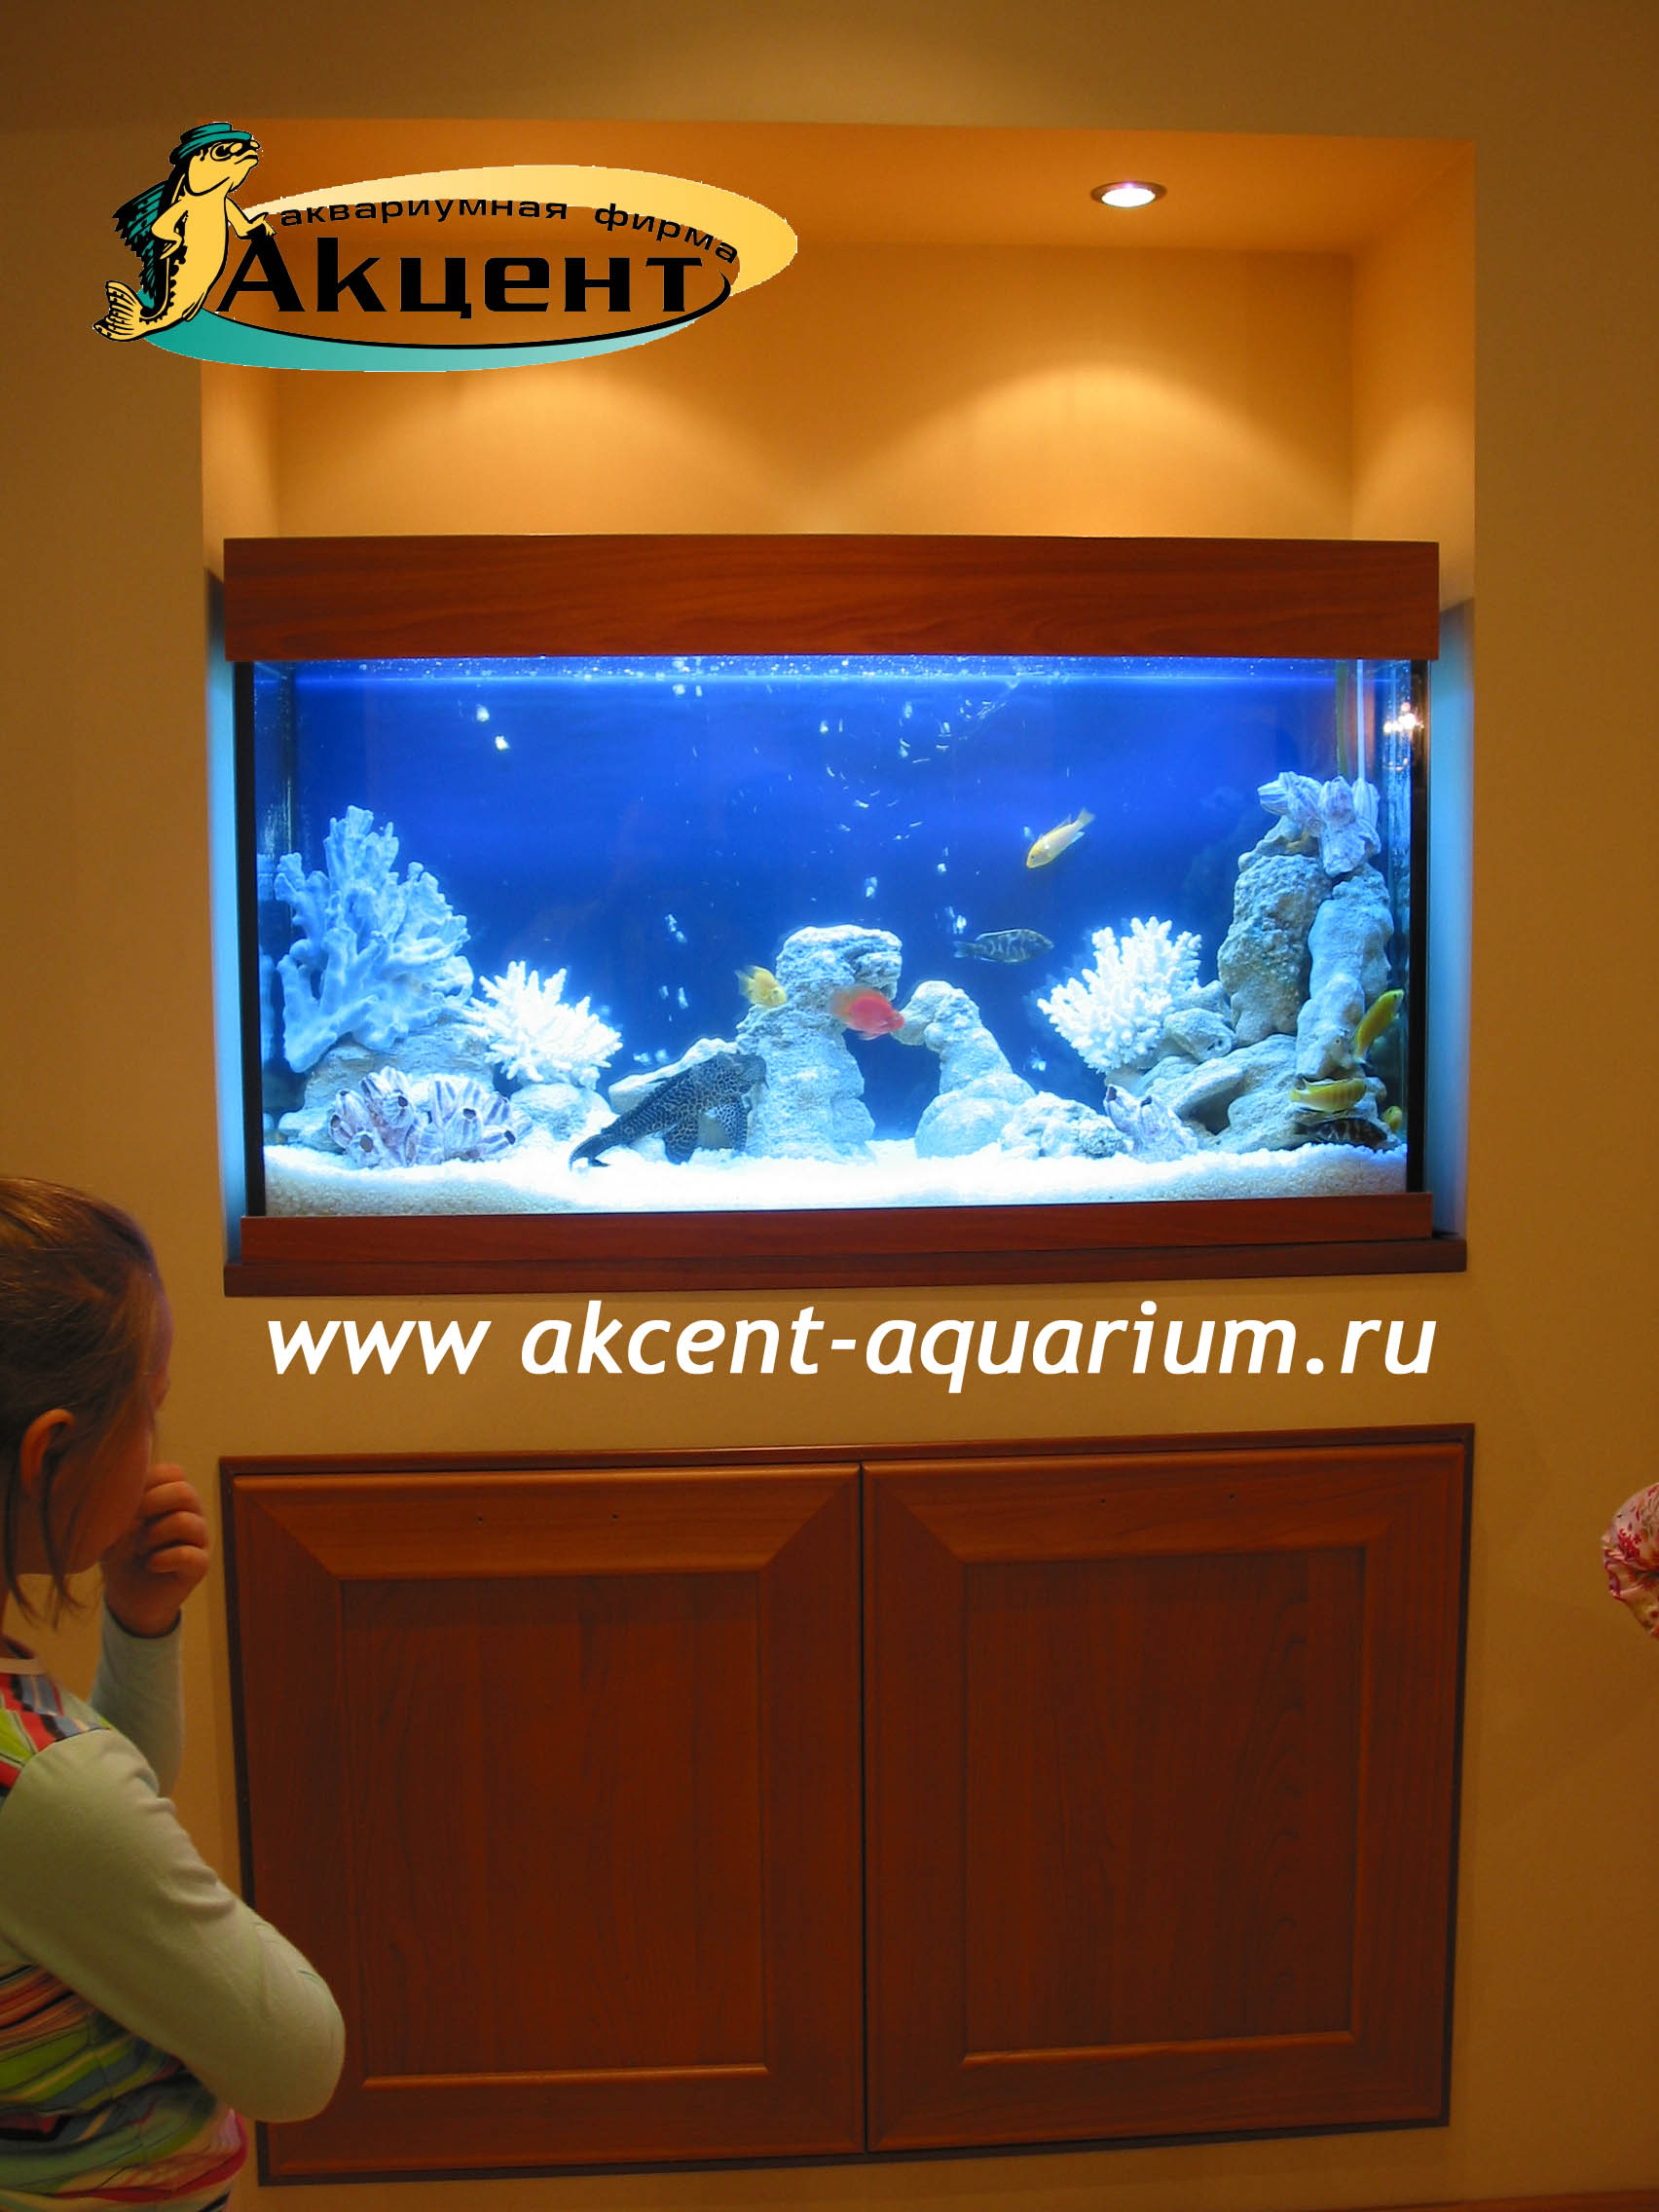 Акцент-аквариум, аквариум 300 литров в нише